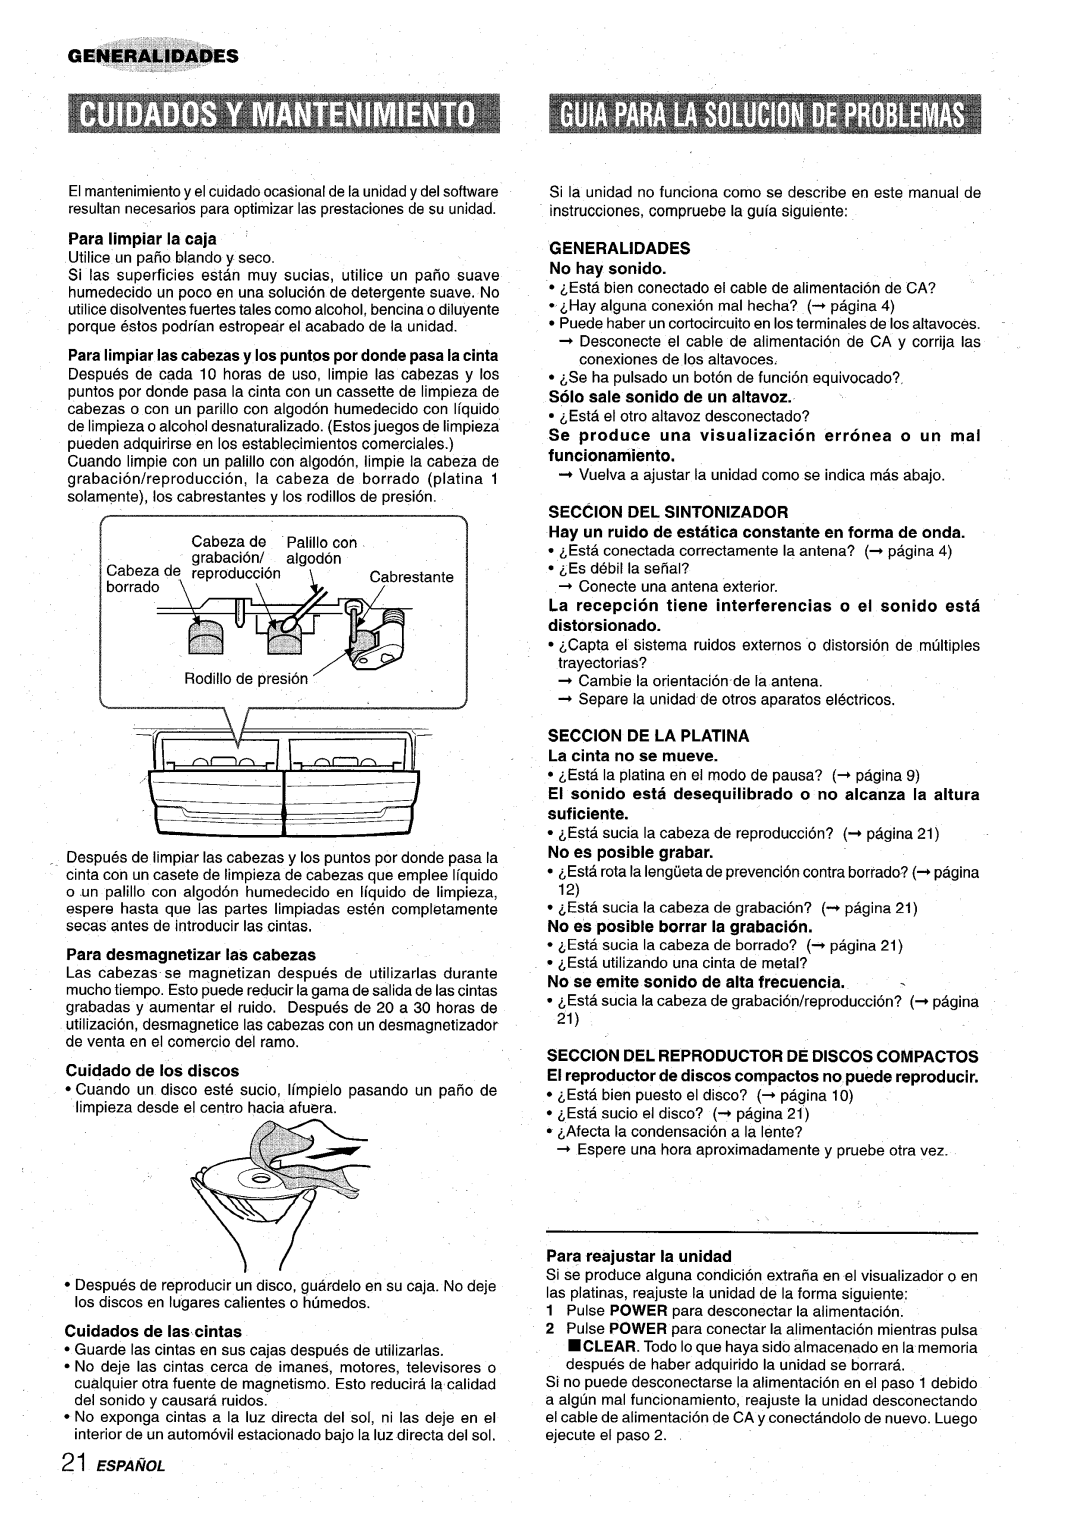 Aiwa Z-VR55 manual Gm#i&iiuiiM4$Es ’, Para desmagnetizar Ias cabezas, GENERALIDADES No hay sonido, Seccion De La Platina 